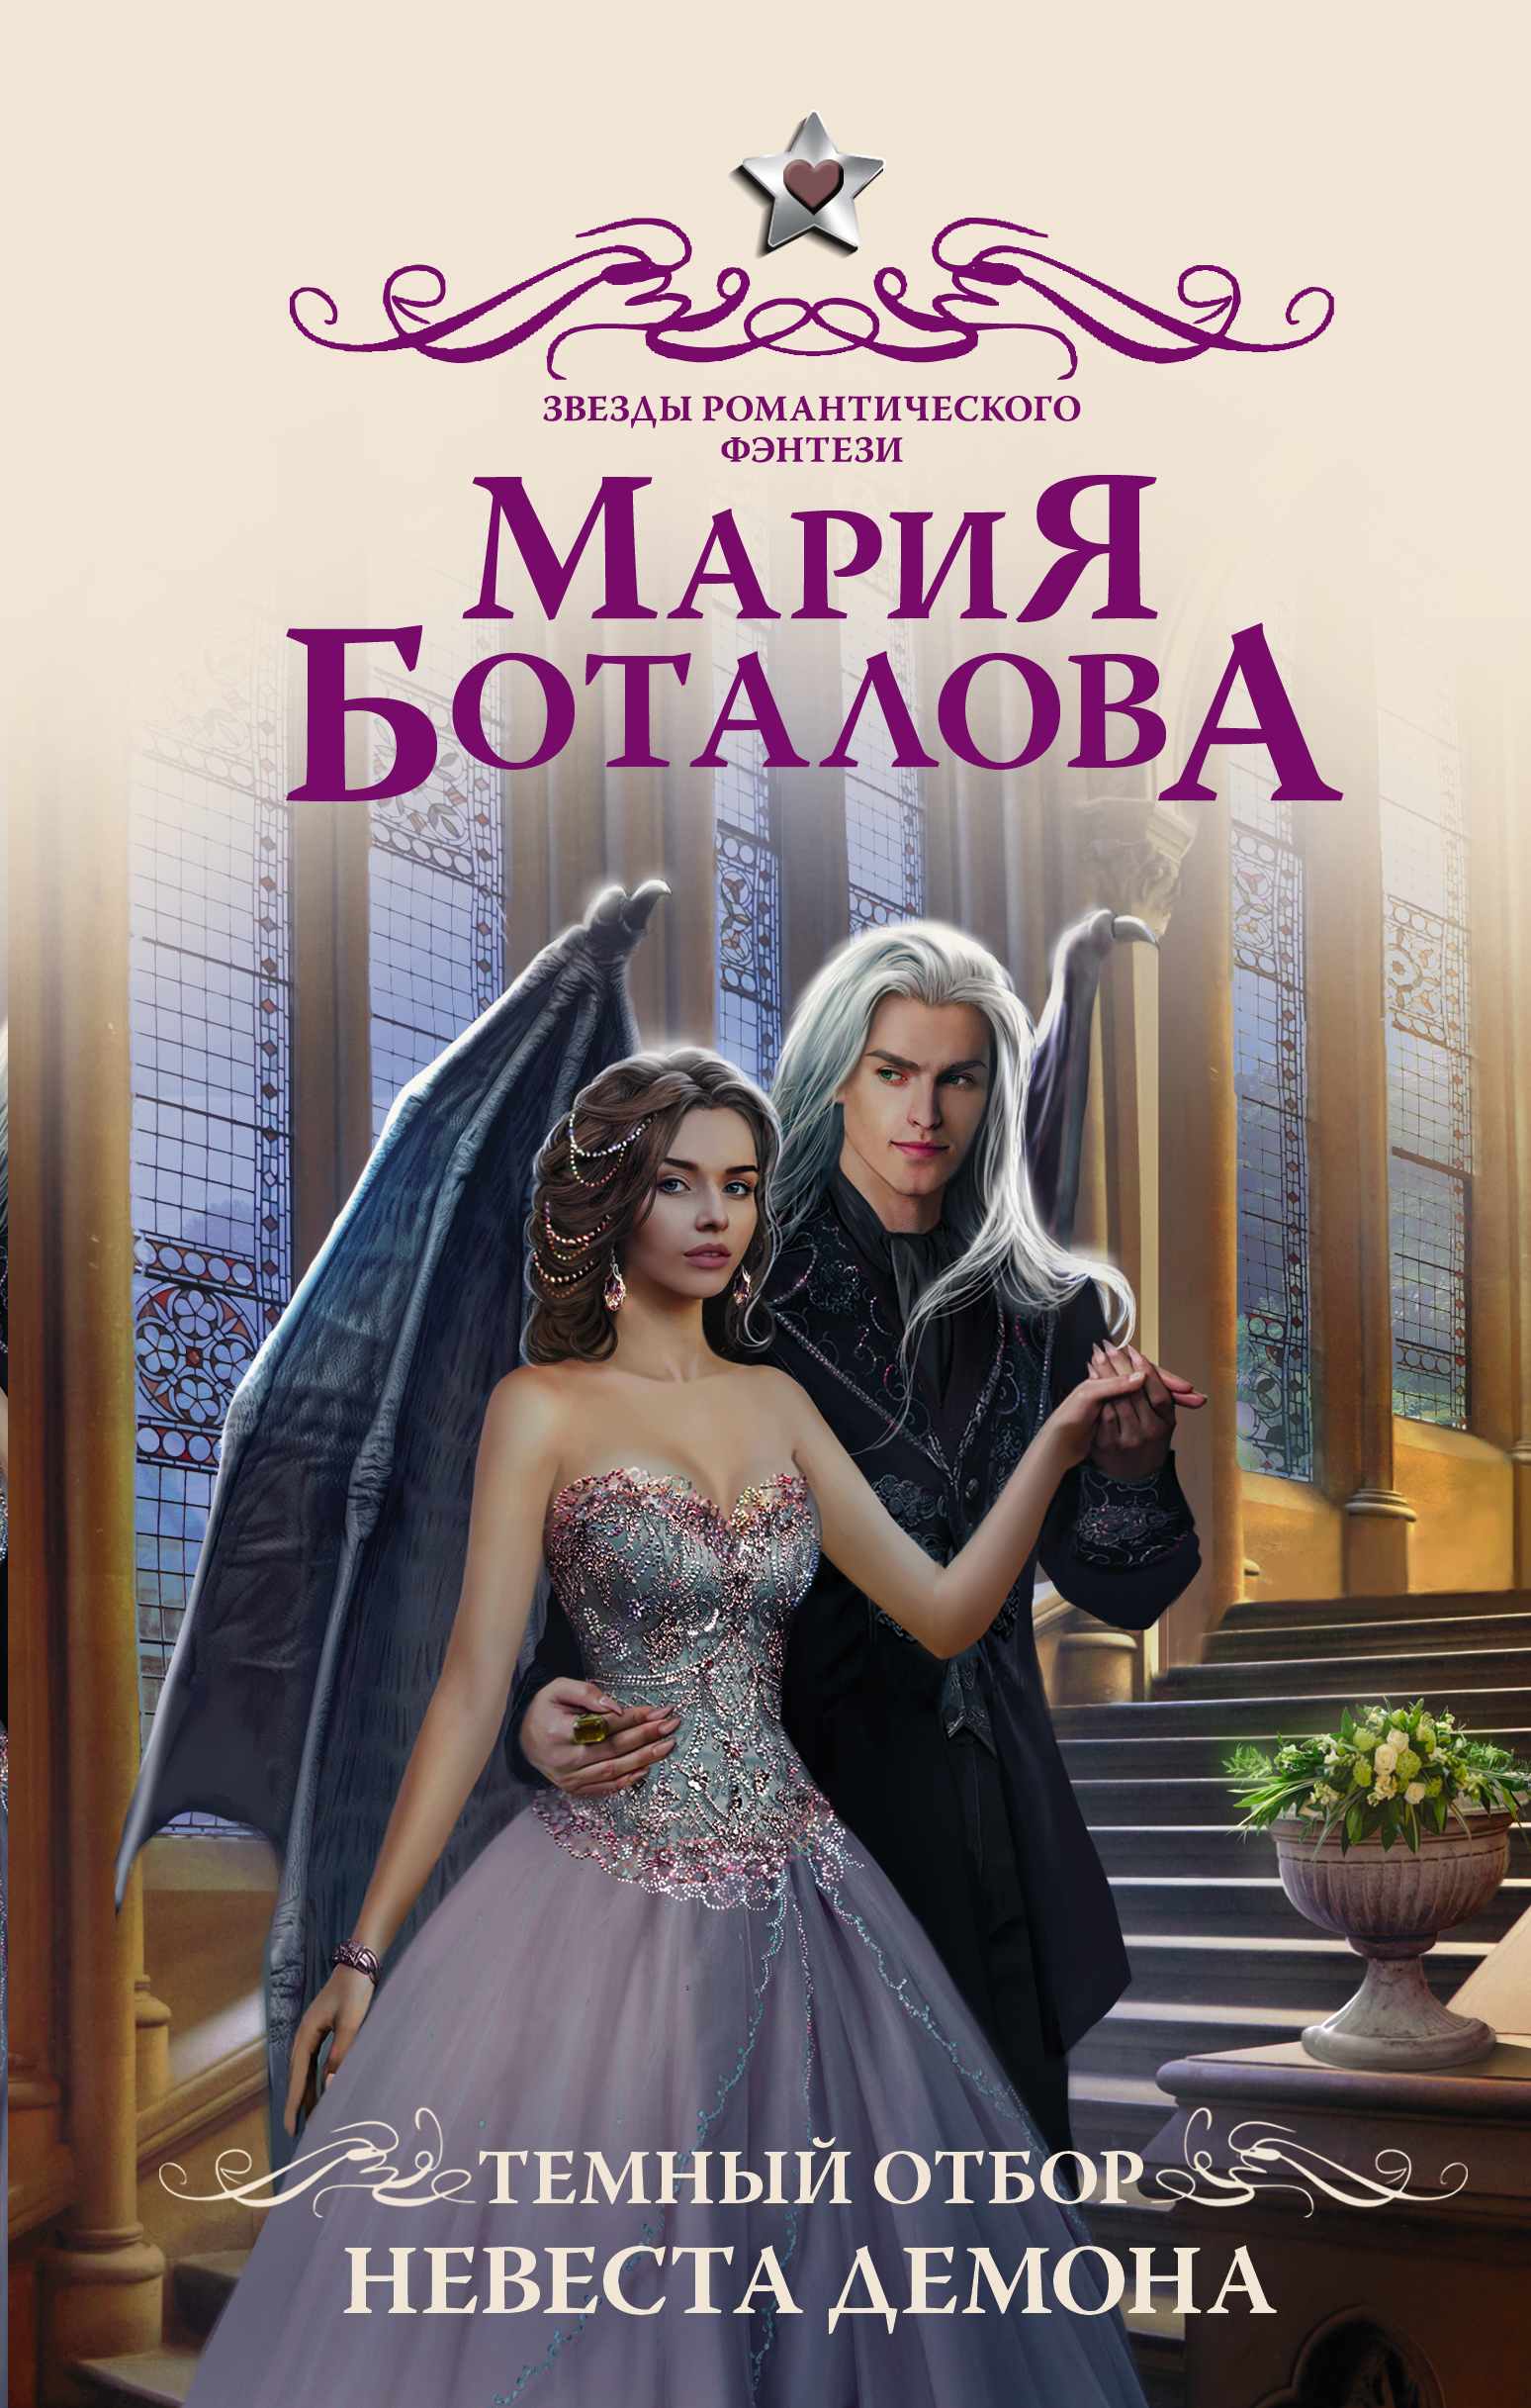 Невеста туманного дракона Мария Боталова